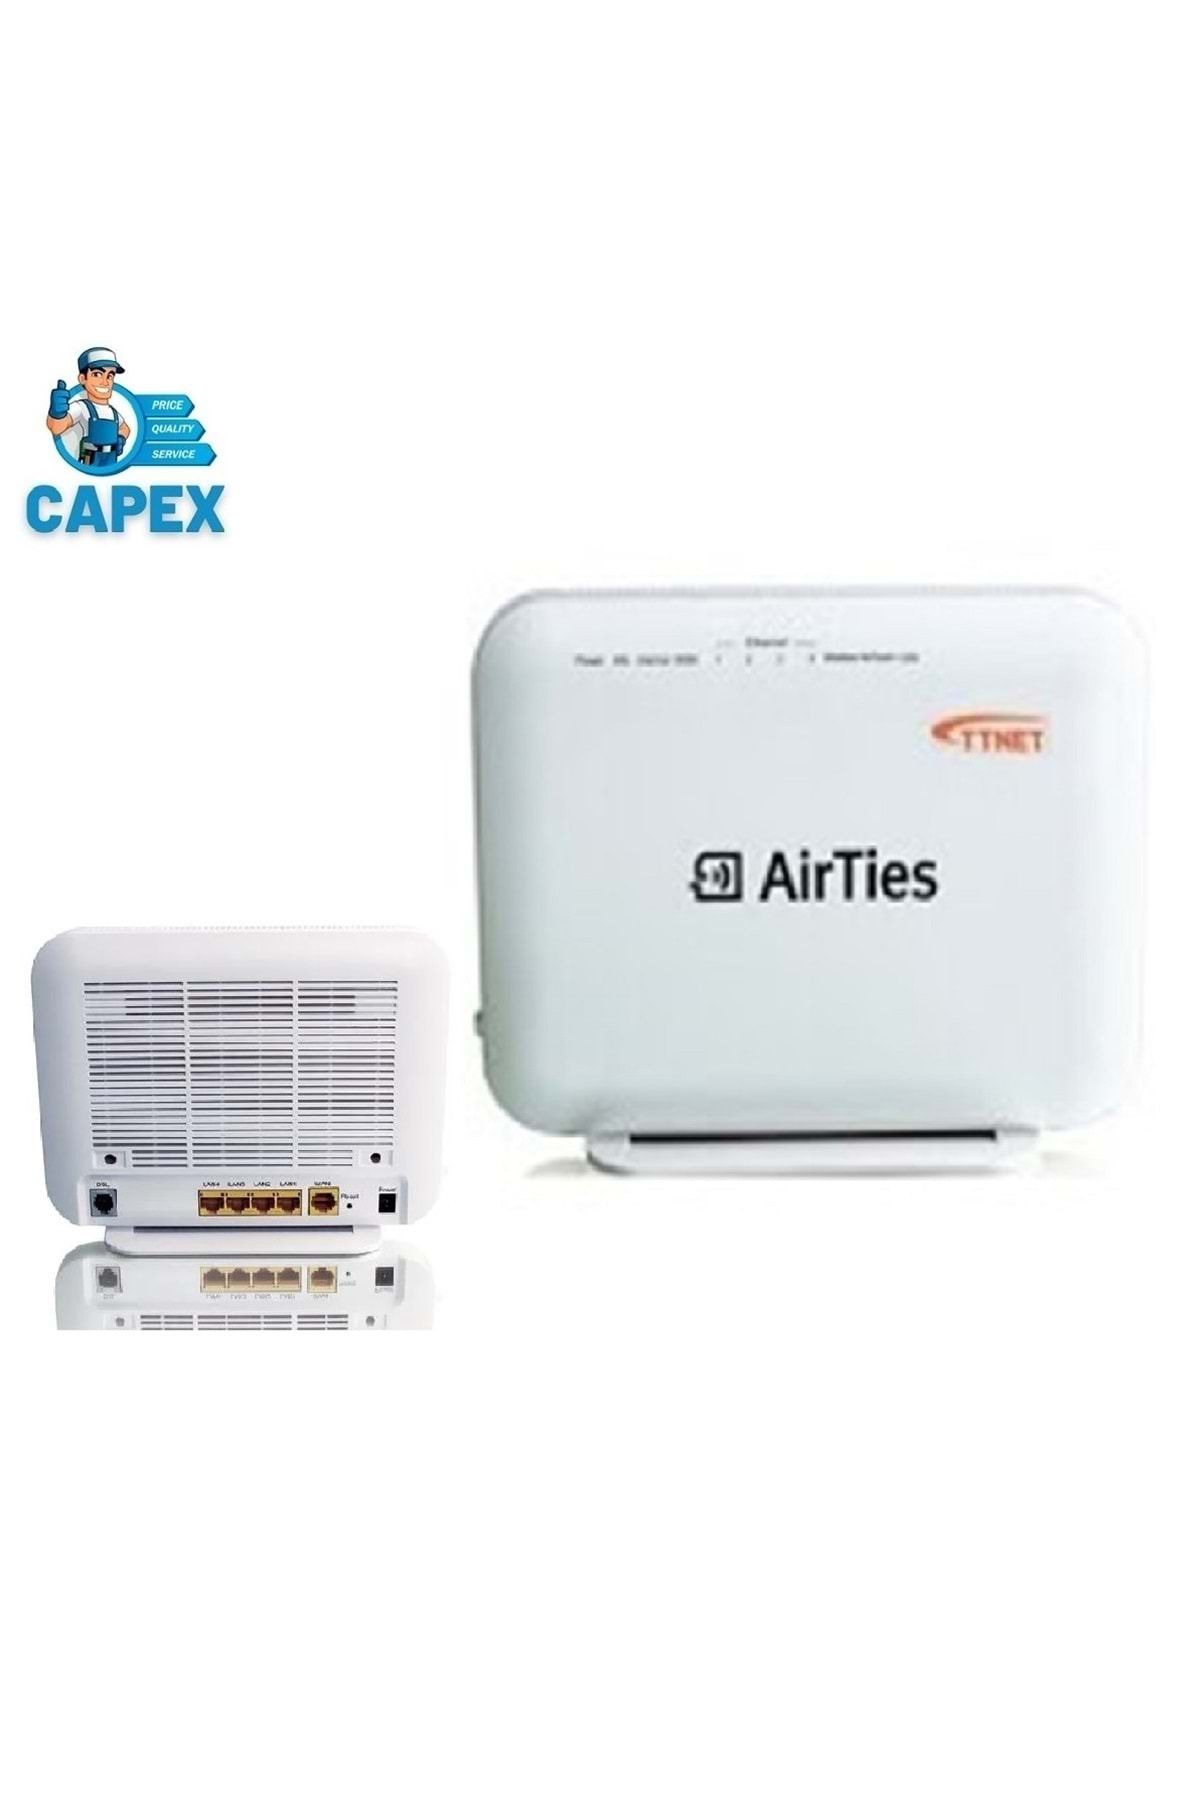 Airties Ttnet 5650 Bk Tt Vers.2 Vdsl2 Modem/router (kutulu-yenilenmiş)